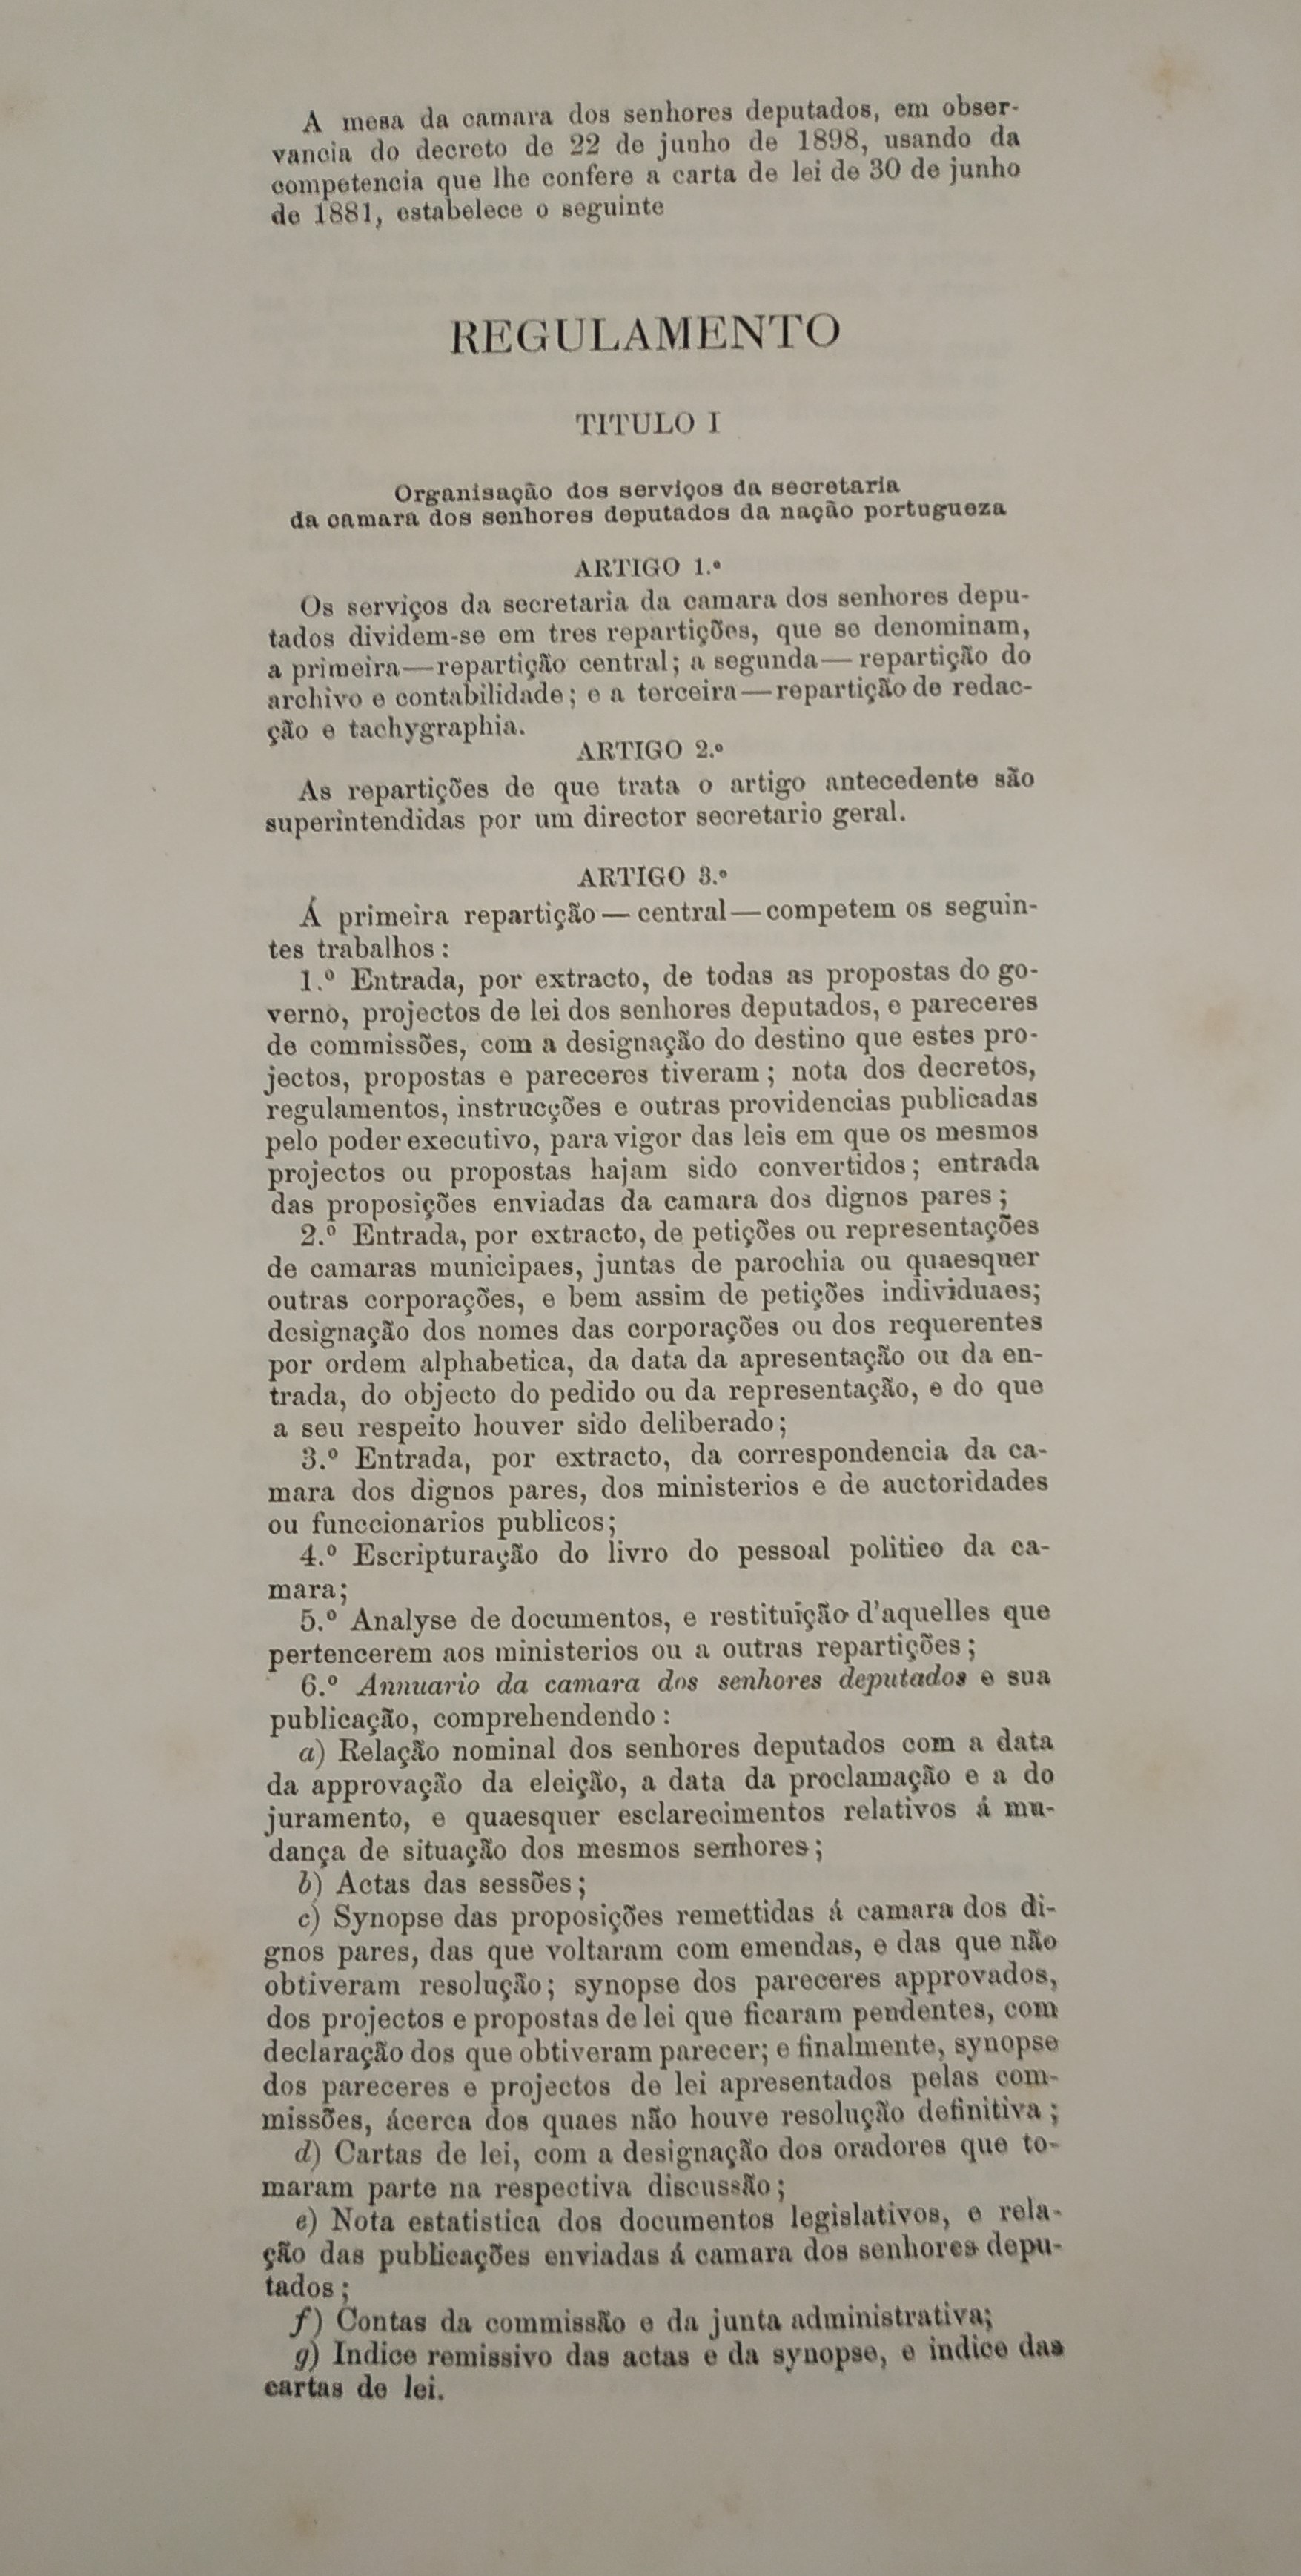 Regulamento dos serviços da secretaria (1899). Cota AHP: Secção I/II, cx. 486, mç. 404, doc. 197.